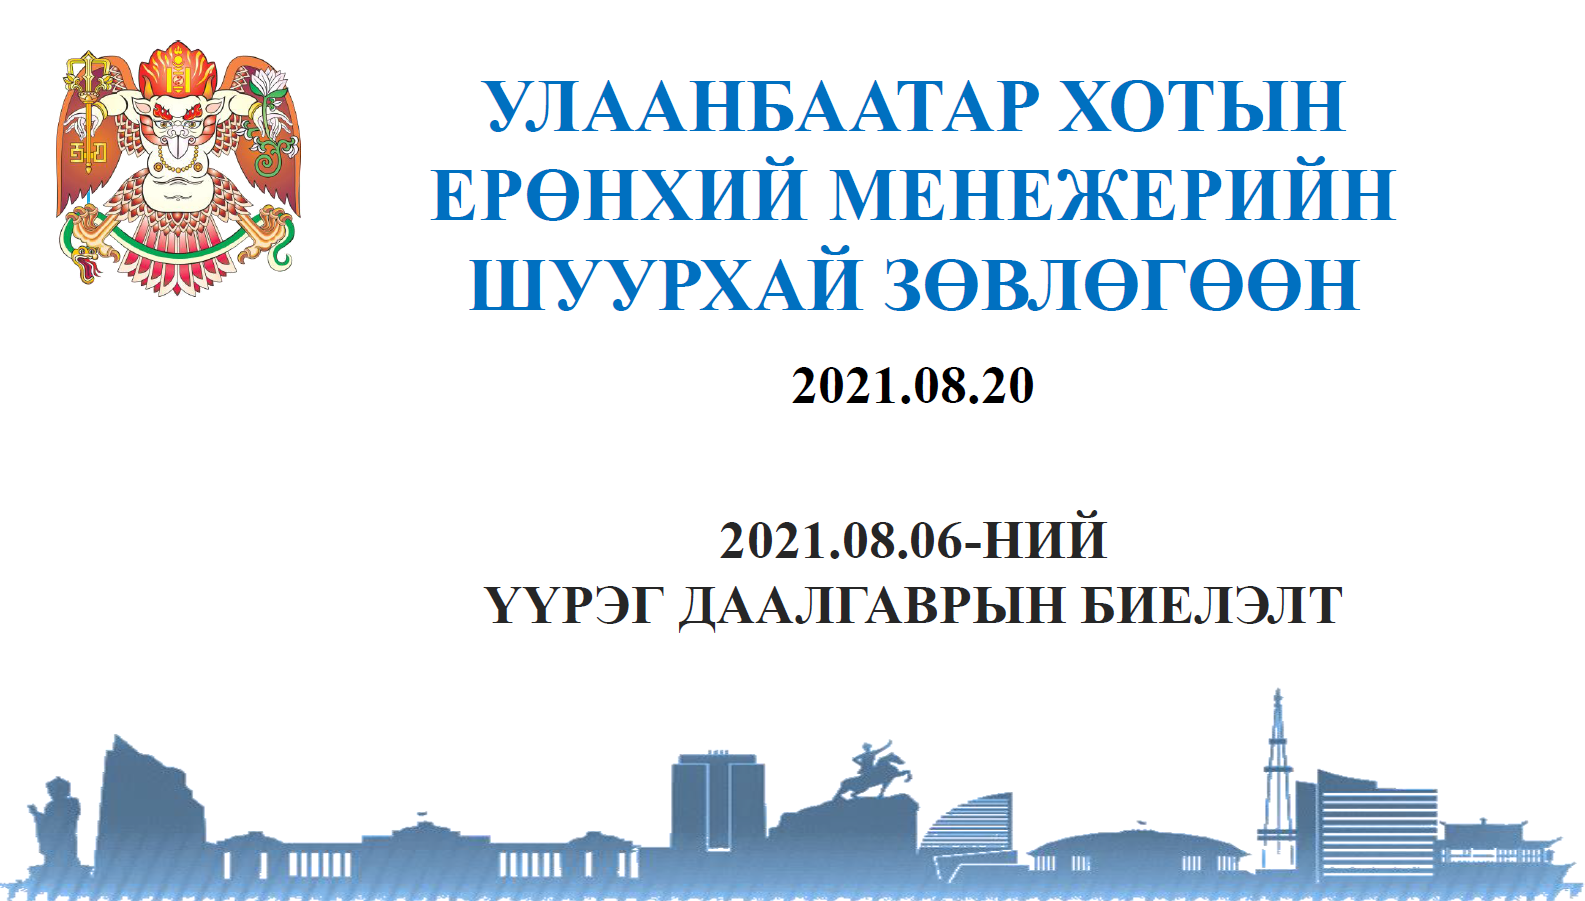 Хотын Ерөнхий менежерийн 2021.08.06-ны шуурхай зөвлөгөөний үүрэг даалгаврын биелэлт